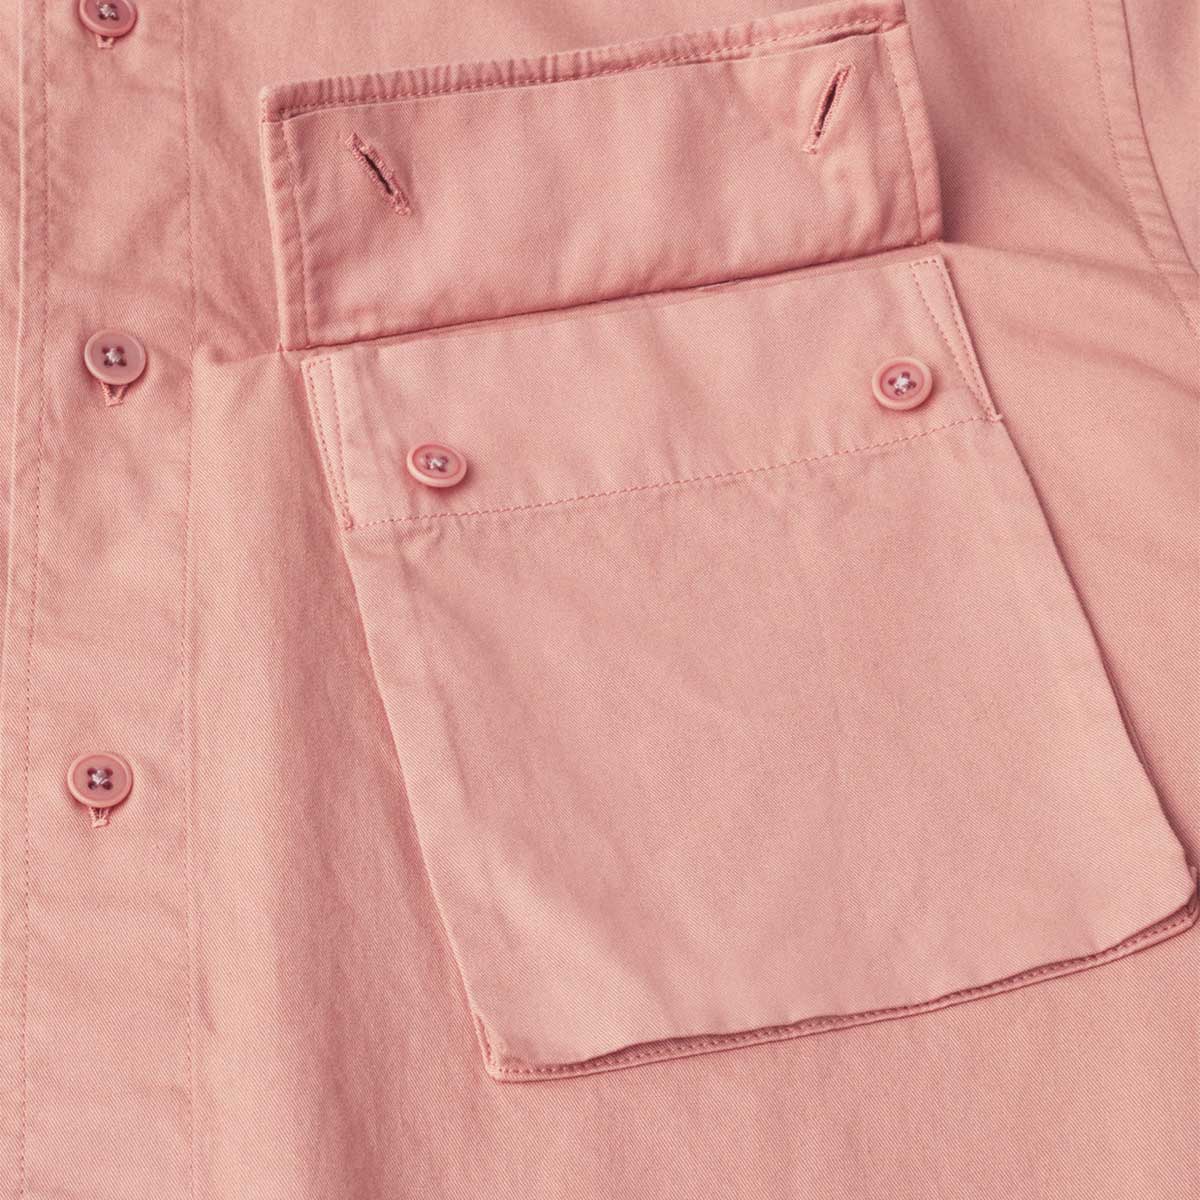 Scale Rust Pink Long Sleeve Shirt  Belstaff   